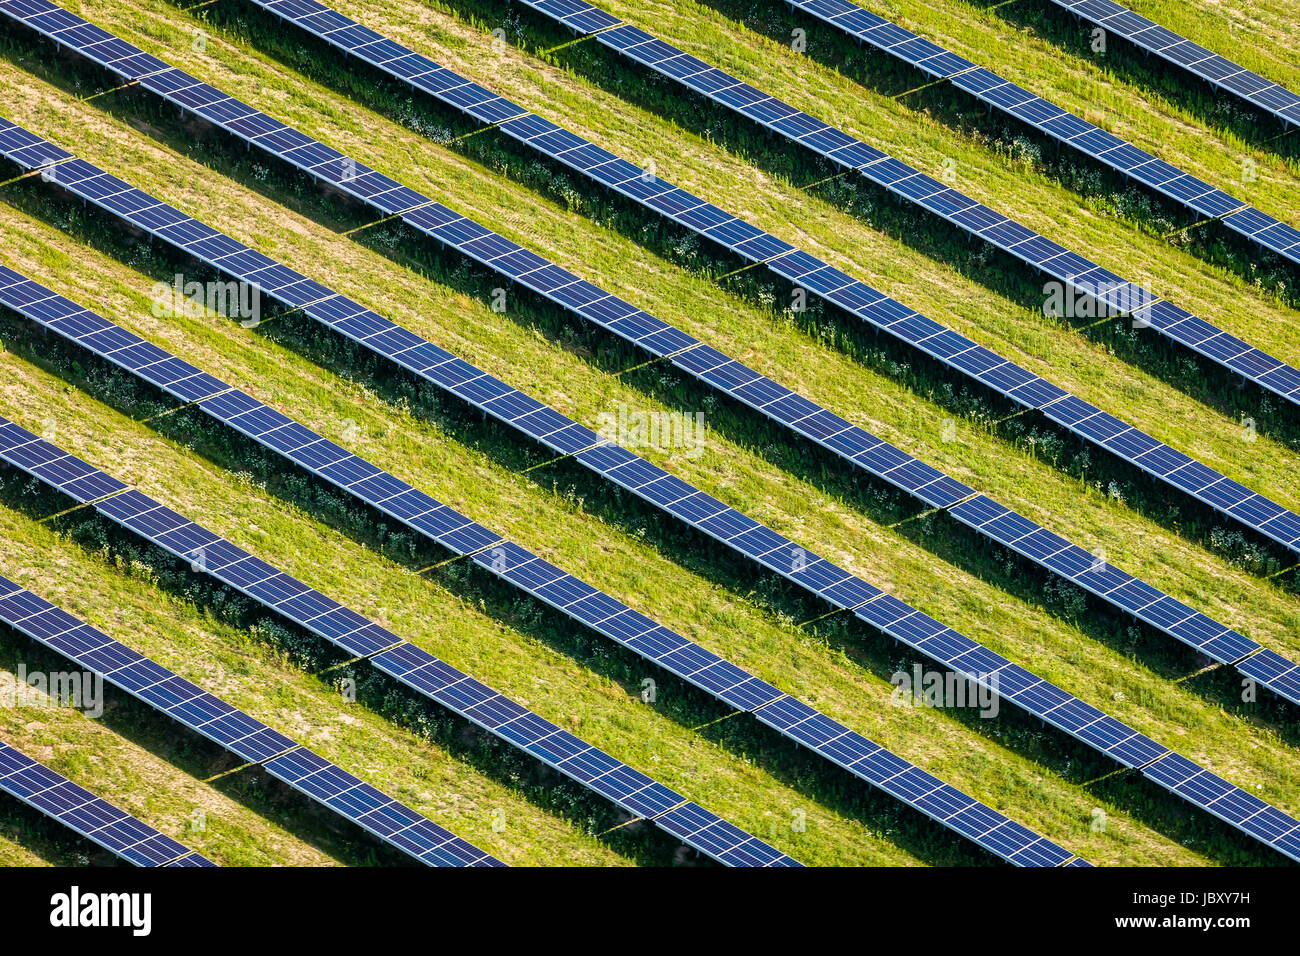 Vista aérea de una granja solar. Foto de stock